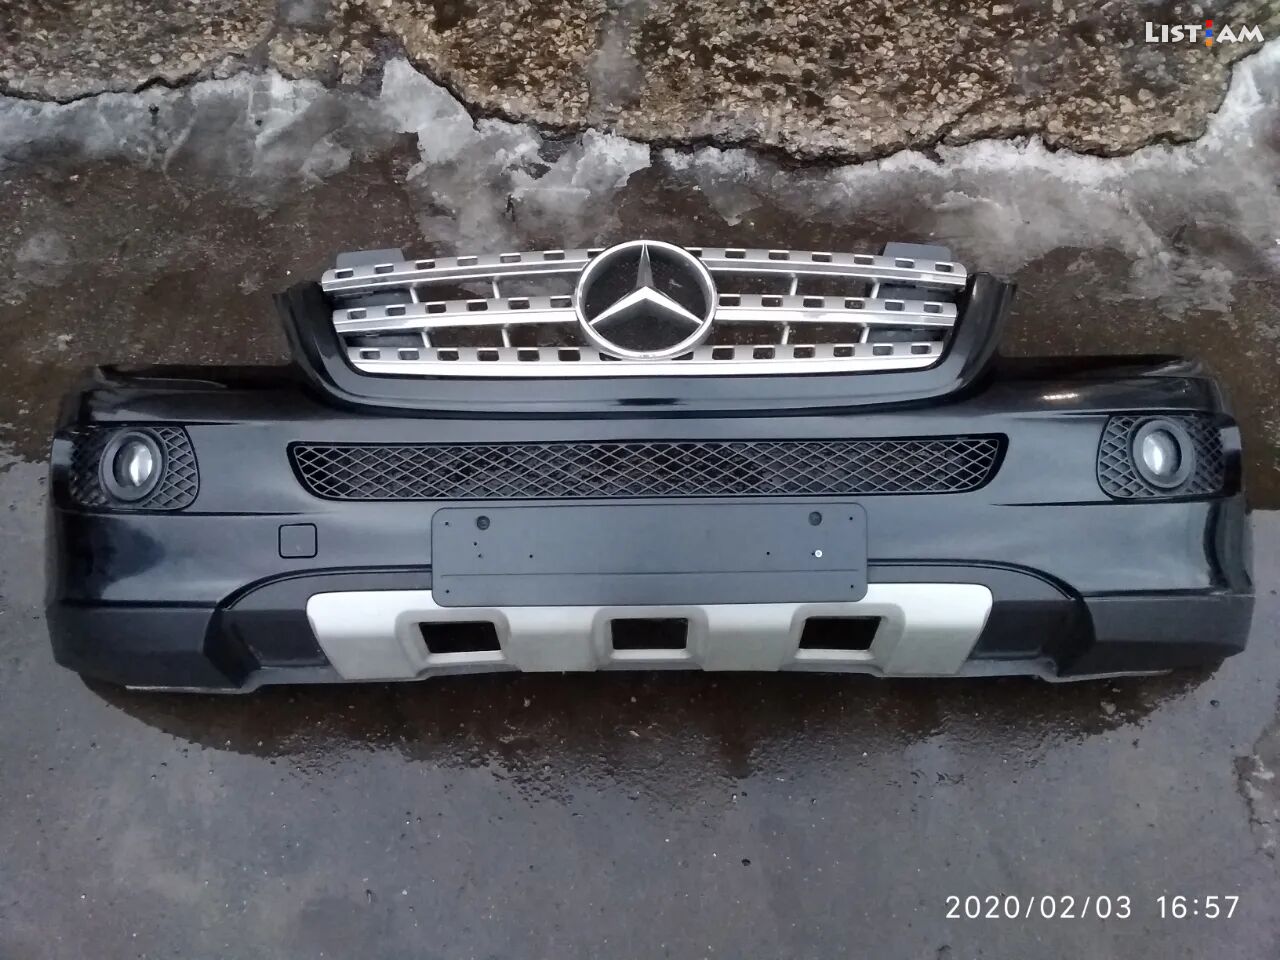 W164 Mercedes Benz